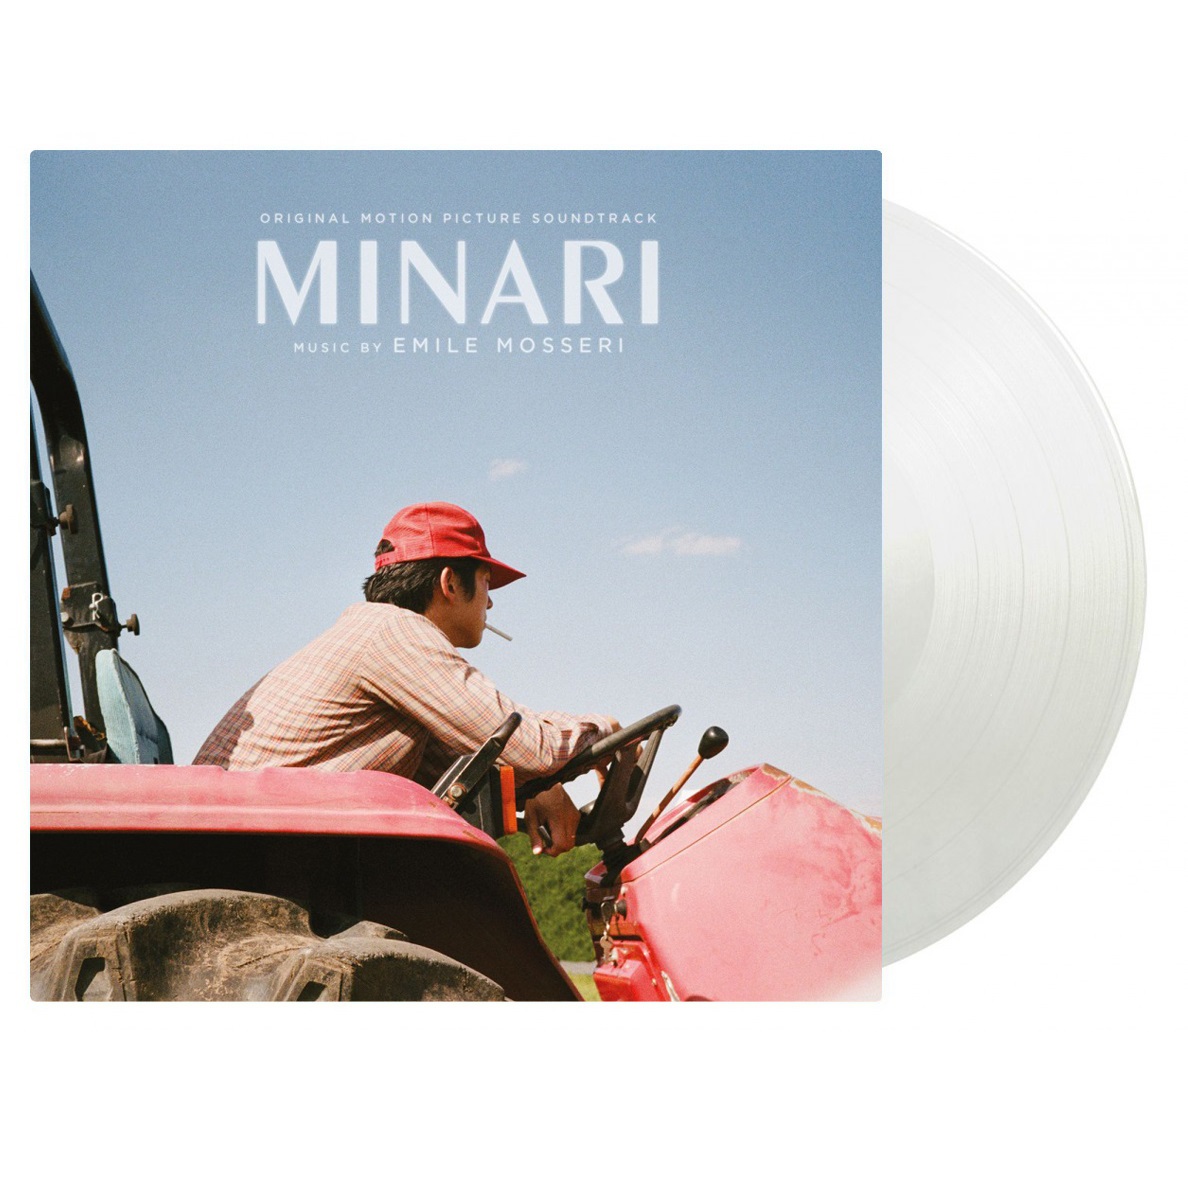 예약판매[PRE-ORDER] 미나리 영화음악 (Minari OST by Emile Mosseri) [투명 크리스탈 컬러 LP]